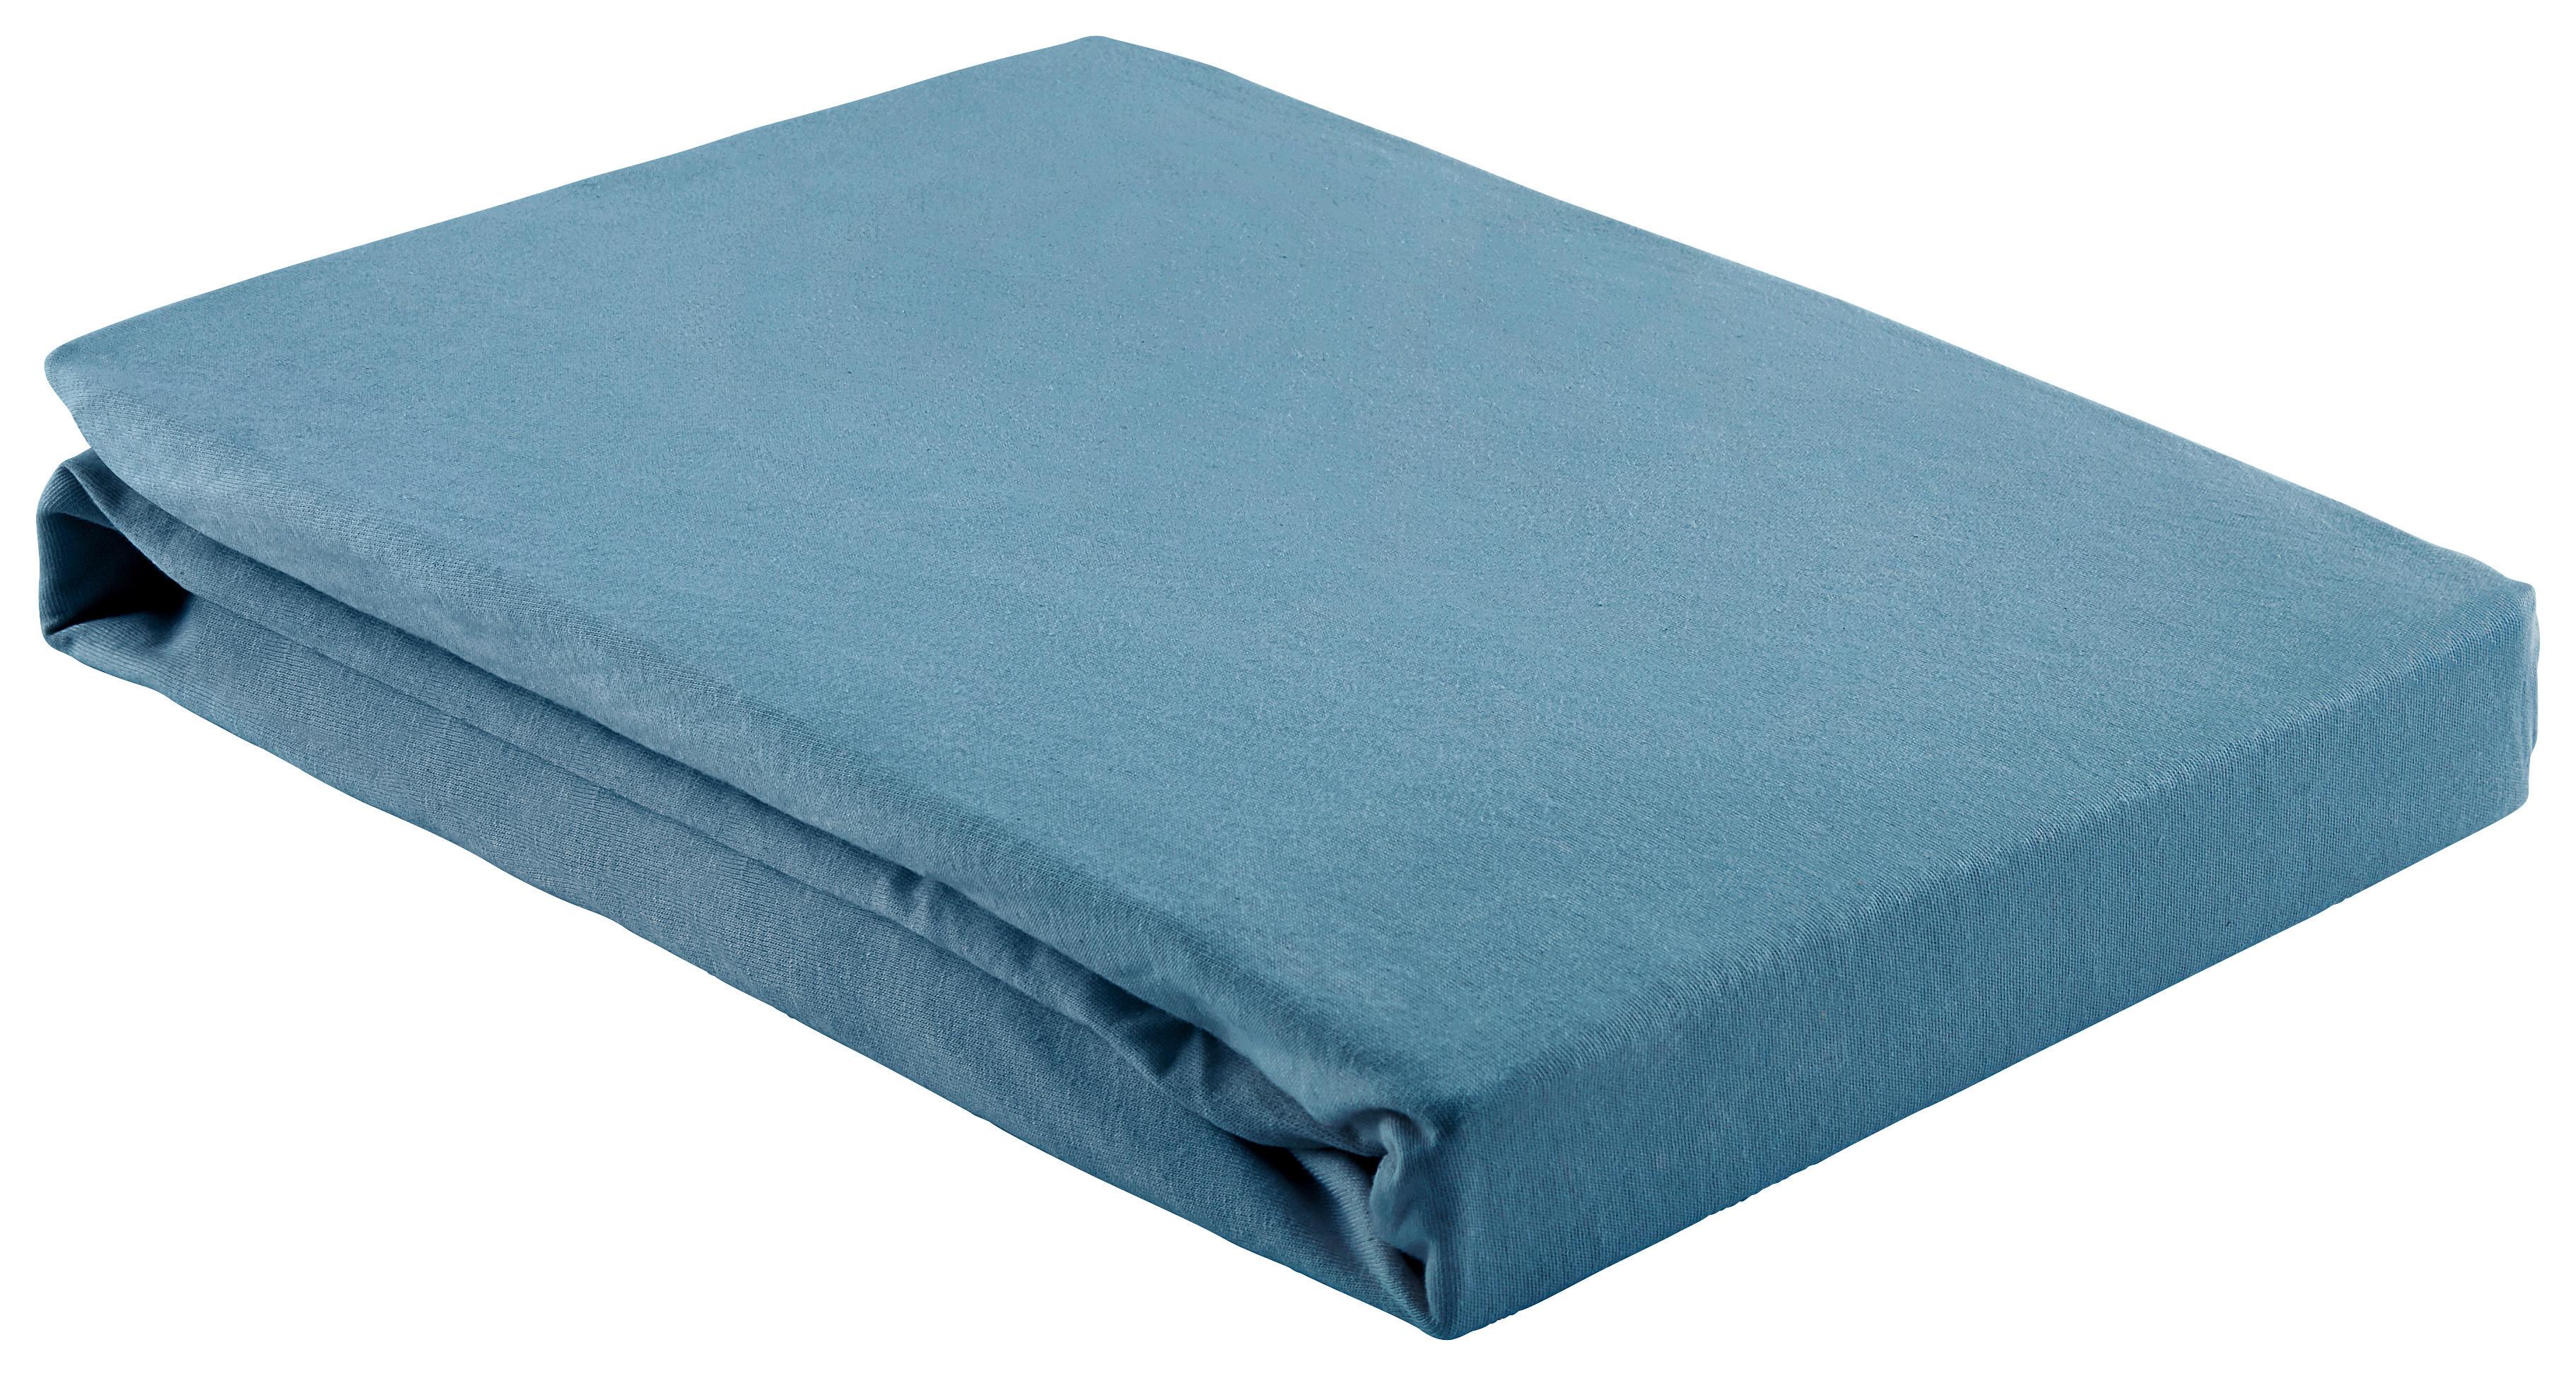 Elastické Prostěradlo Basic, 150/200cm, Tmavě Modrá - tmavě modrá, textil (150/200cm) - Modern Living